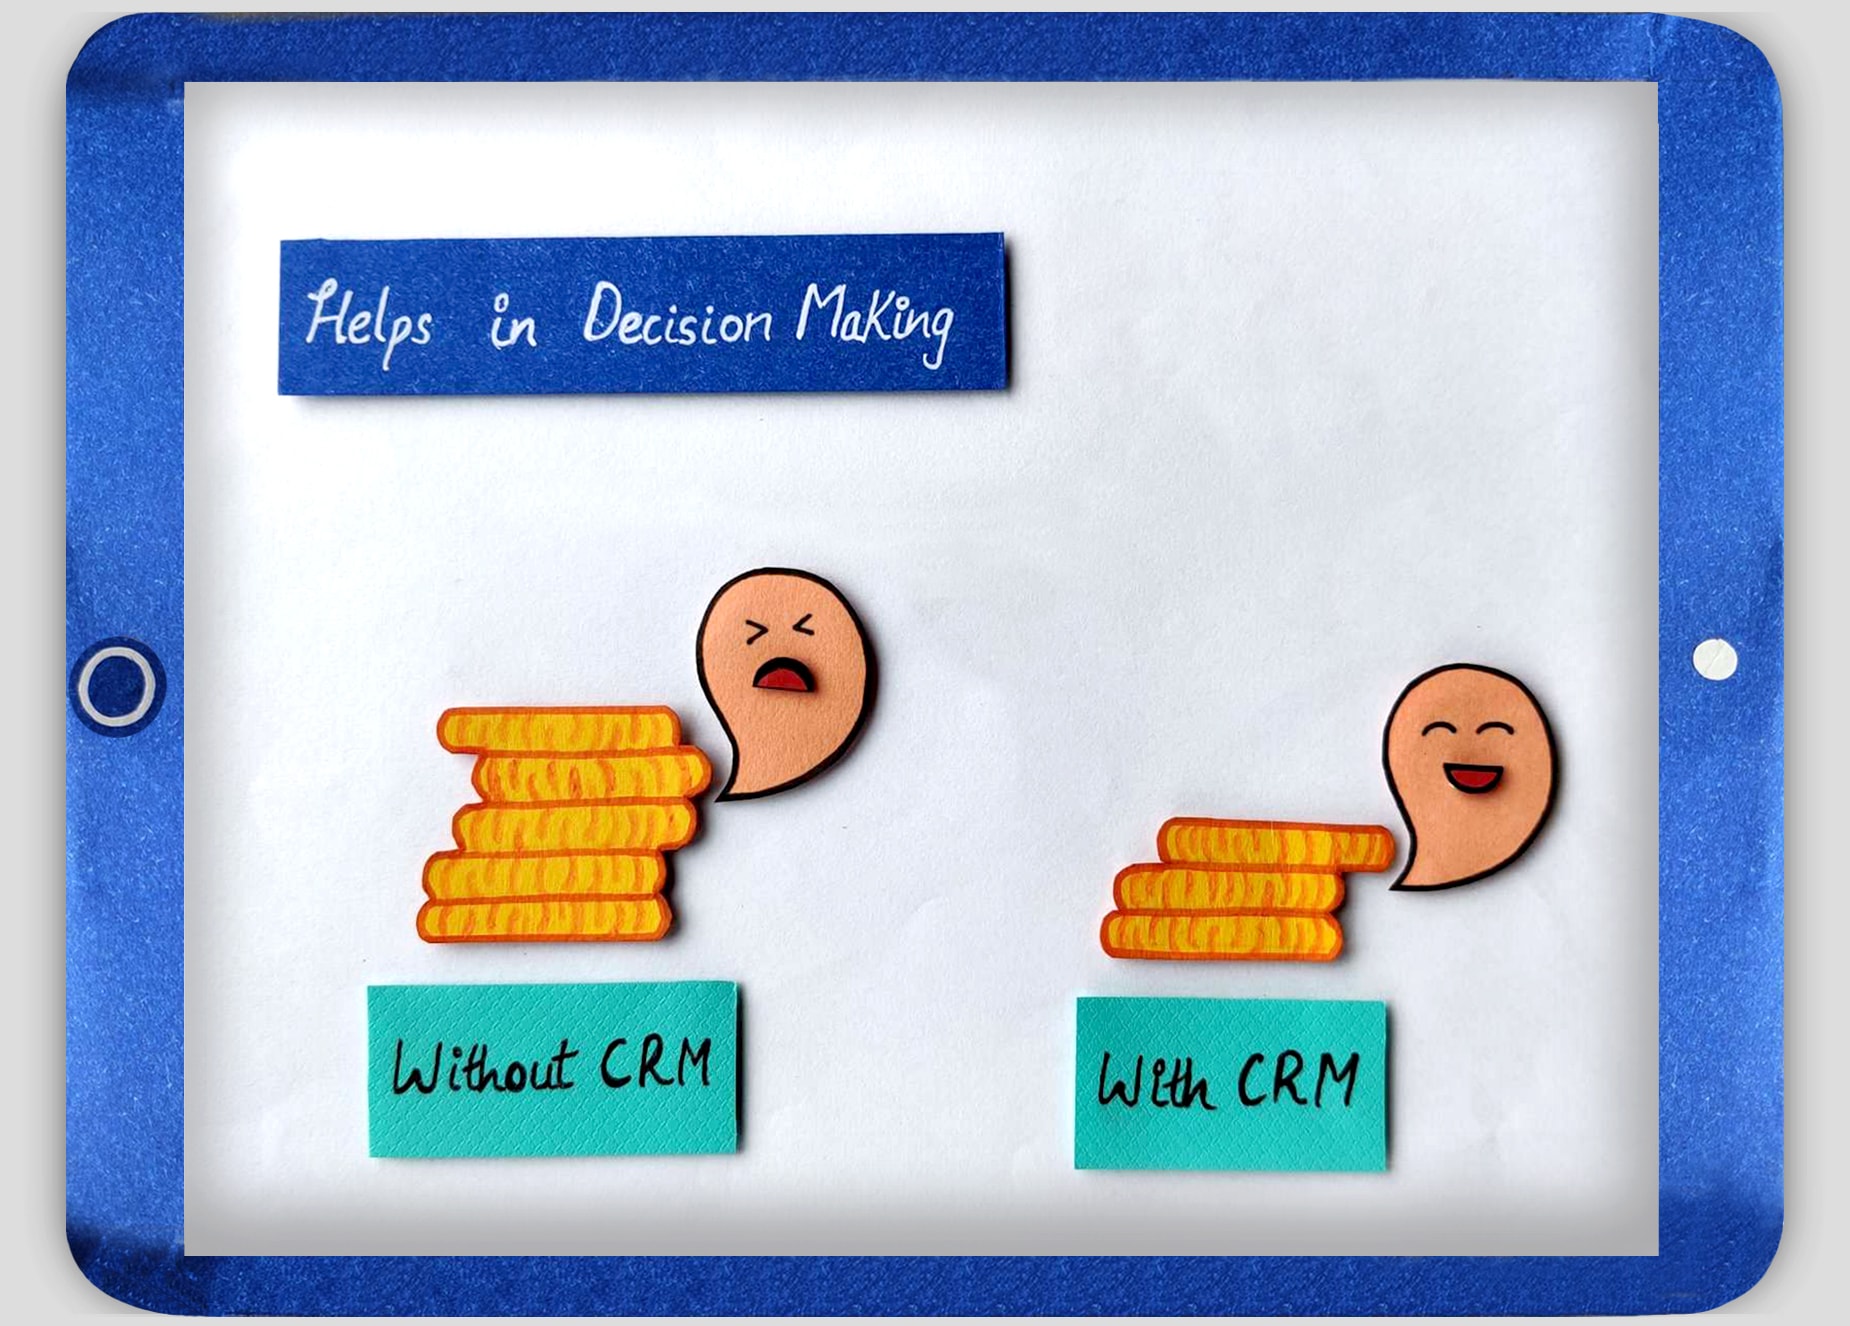 sales management CRM